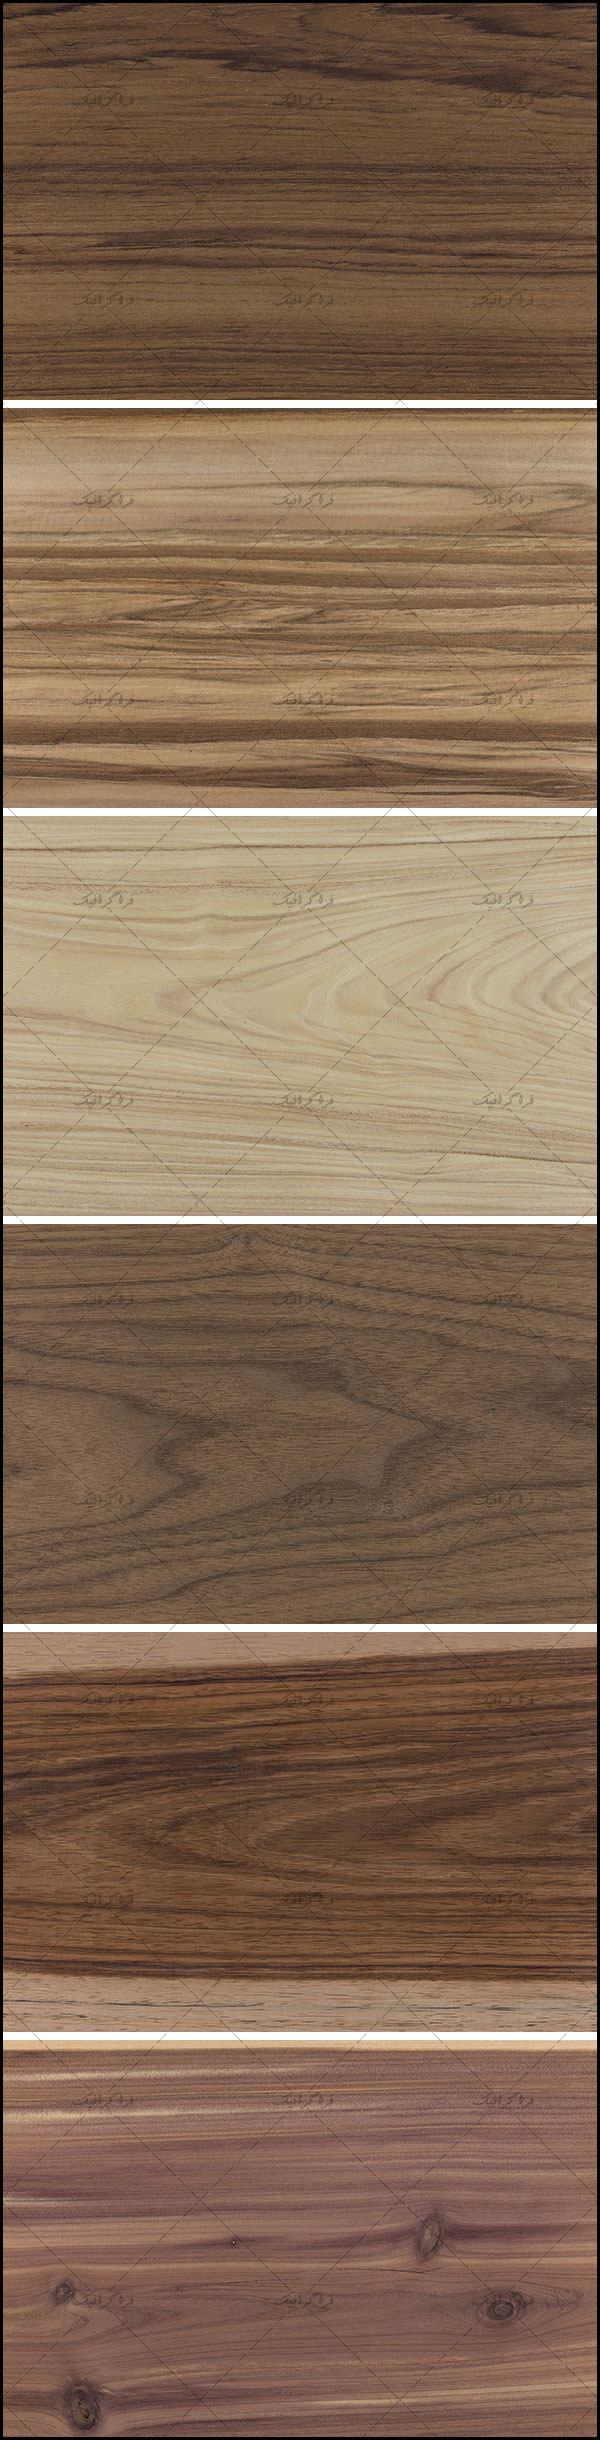 دانلود تکسچر های چوب Wood Textures شماره 11 -  